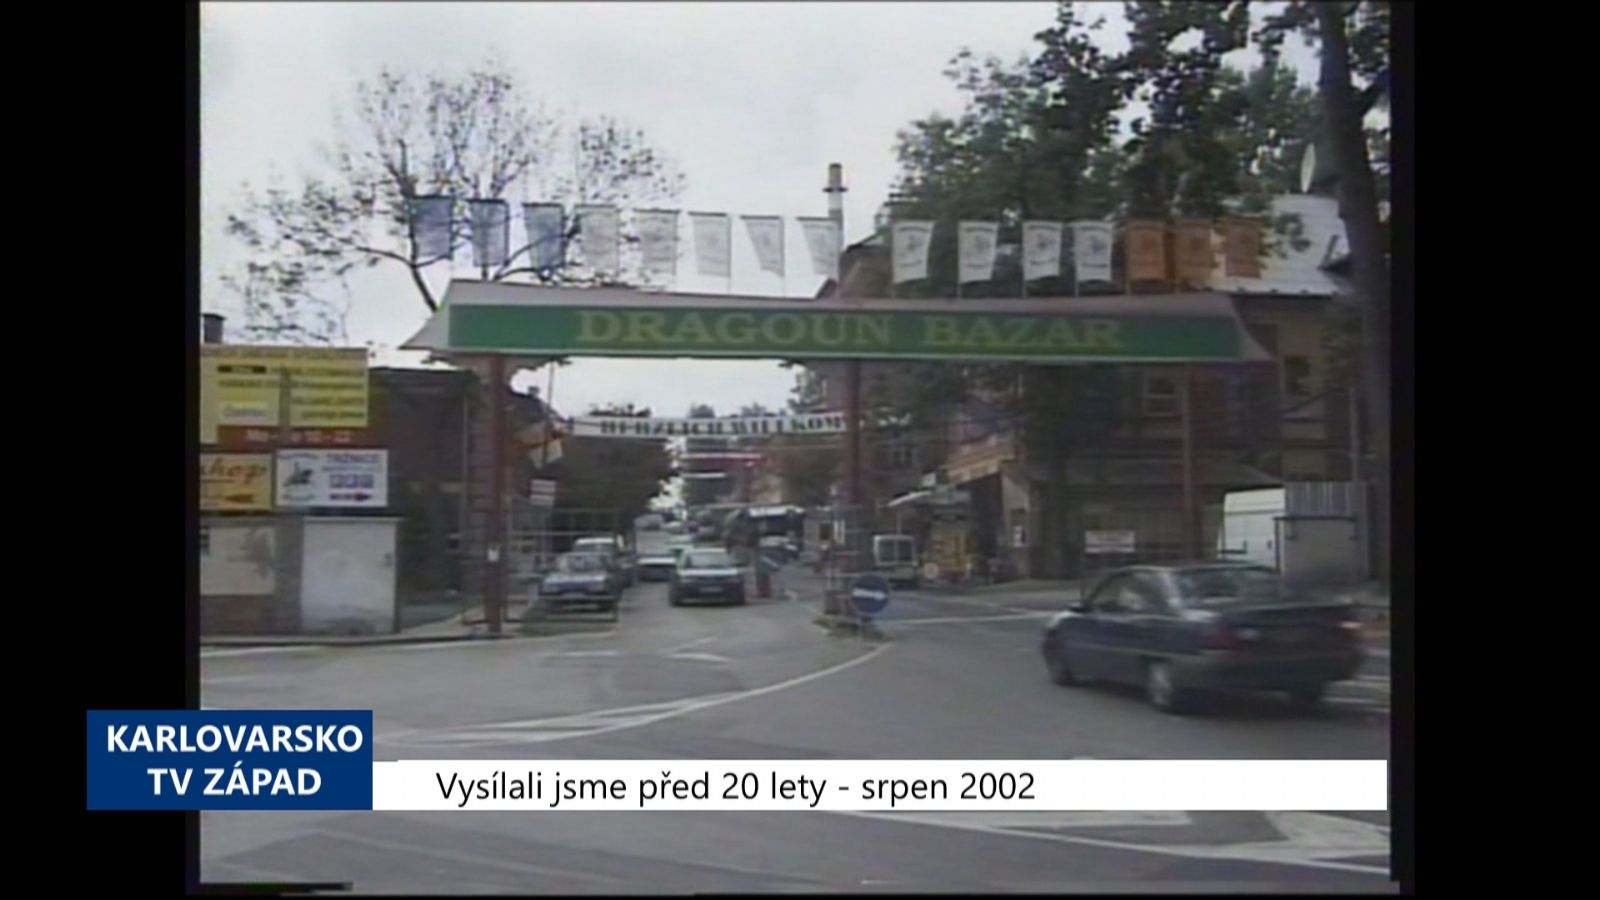 2002 – Cheb: Nový tržní řád má omezit problémové tržnice (TV Západ)